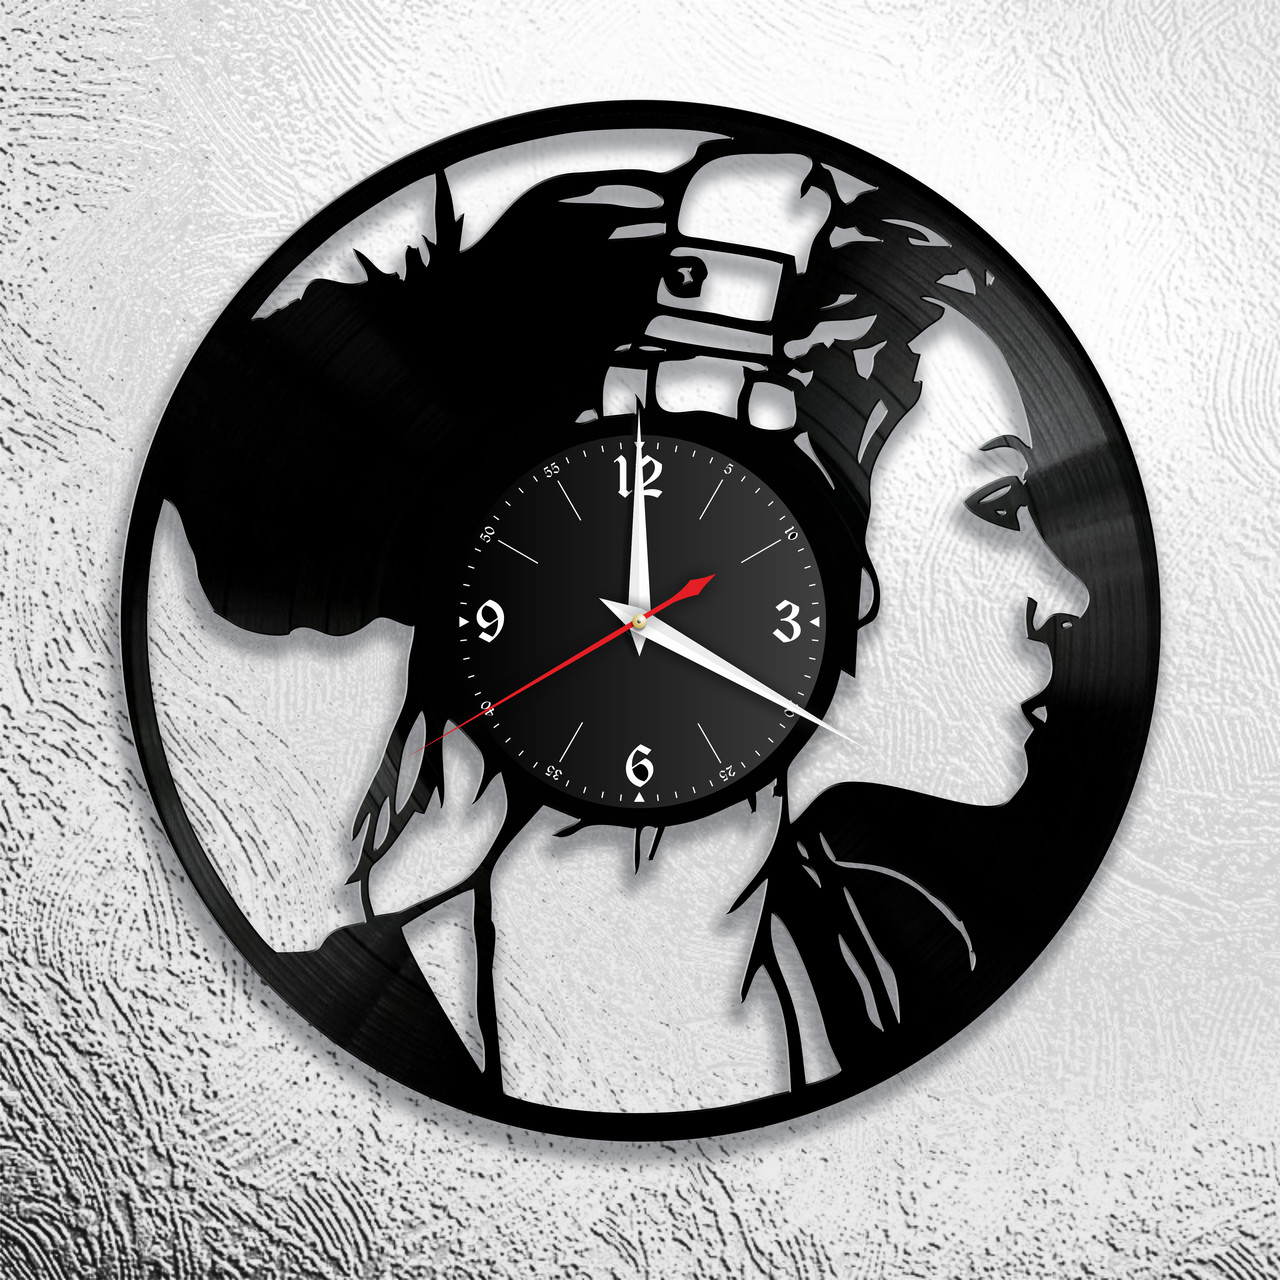 Оригинальные часы из виниловых пластинок "Девушка" версия 2, фото 1